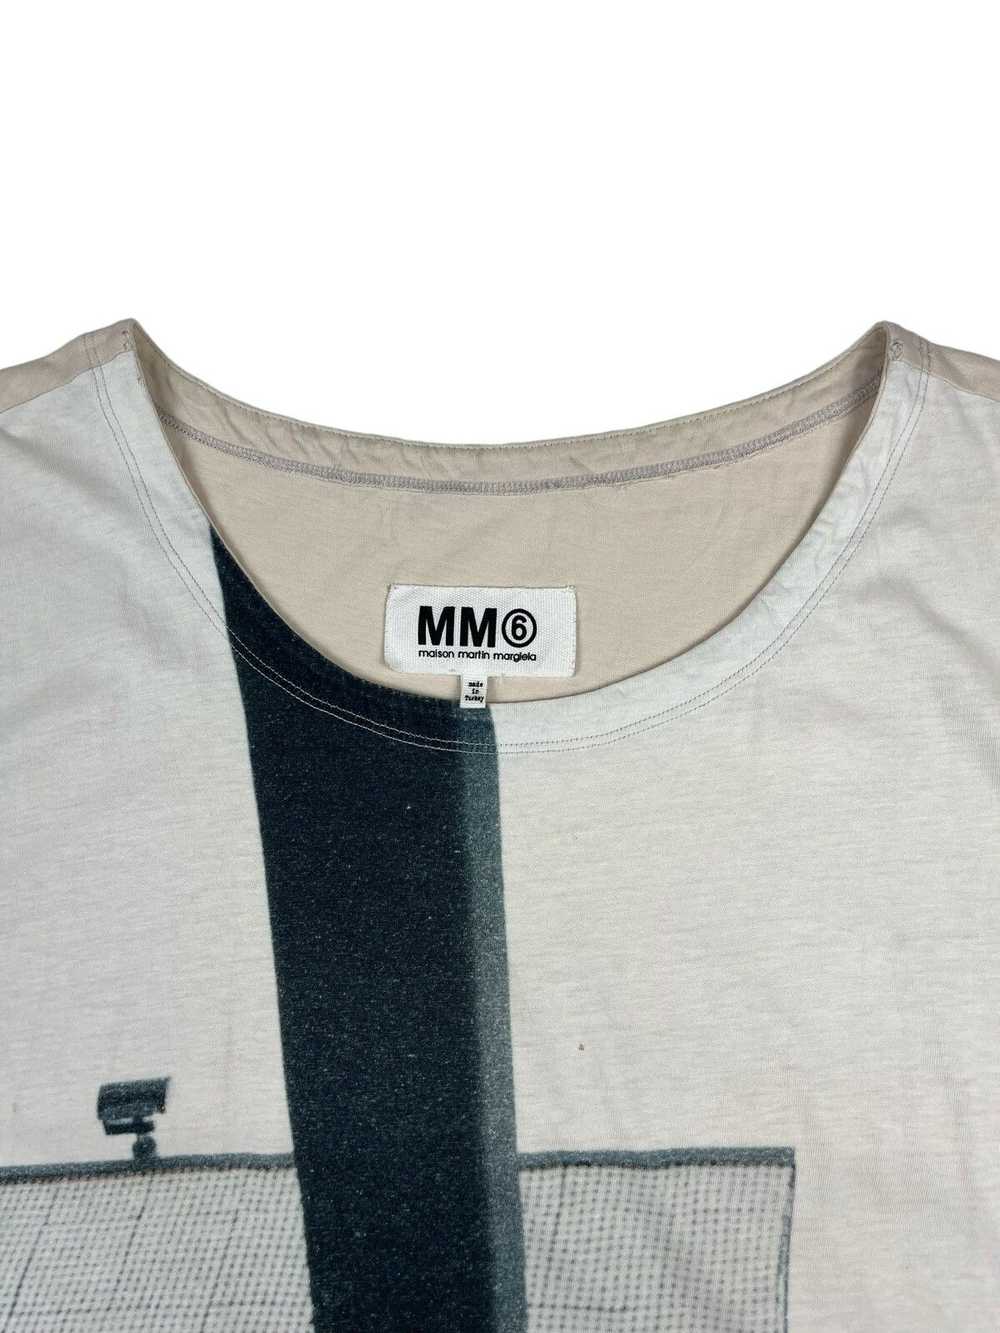 Maison Margiela Mm6 Logo Tee Dress - image 4